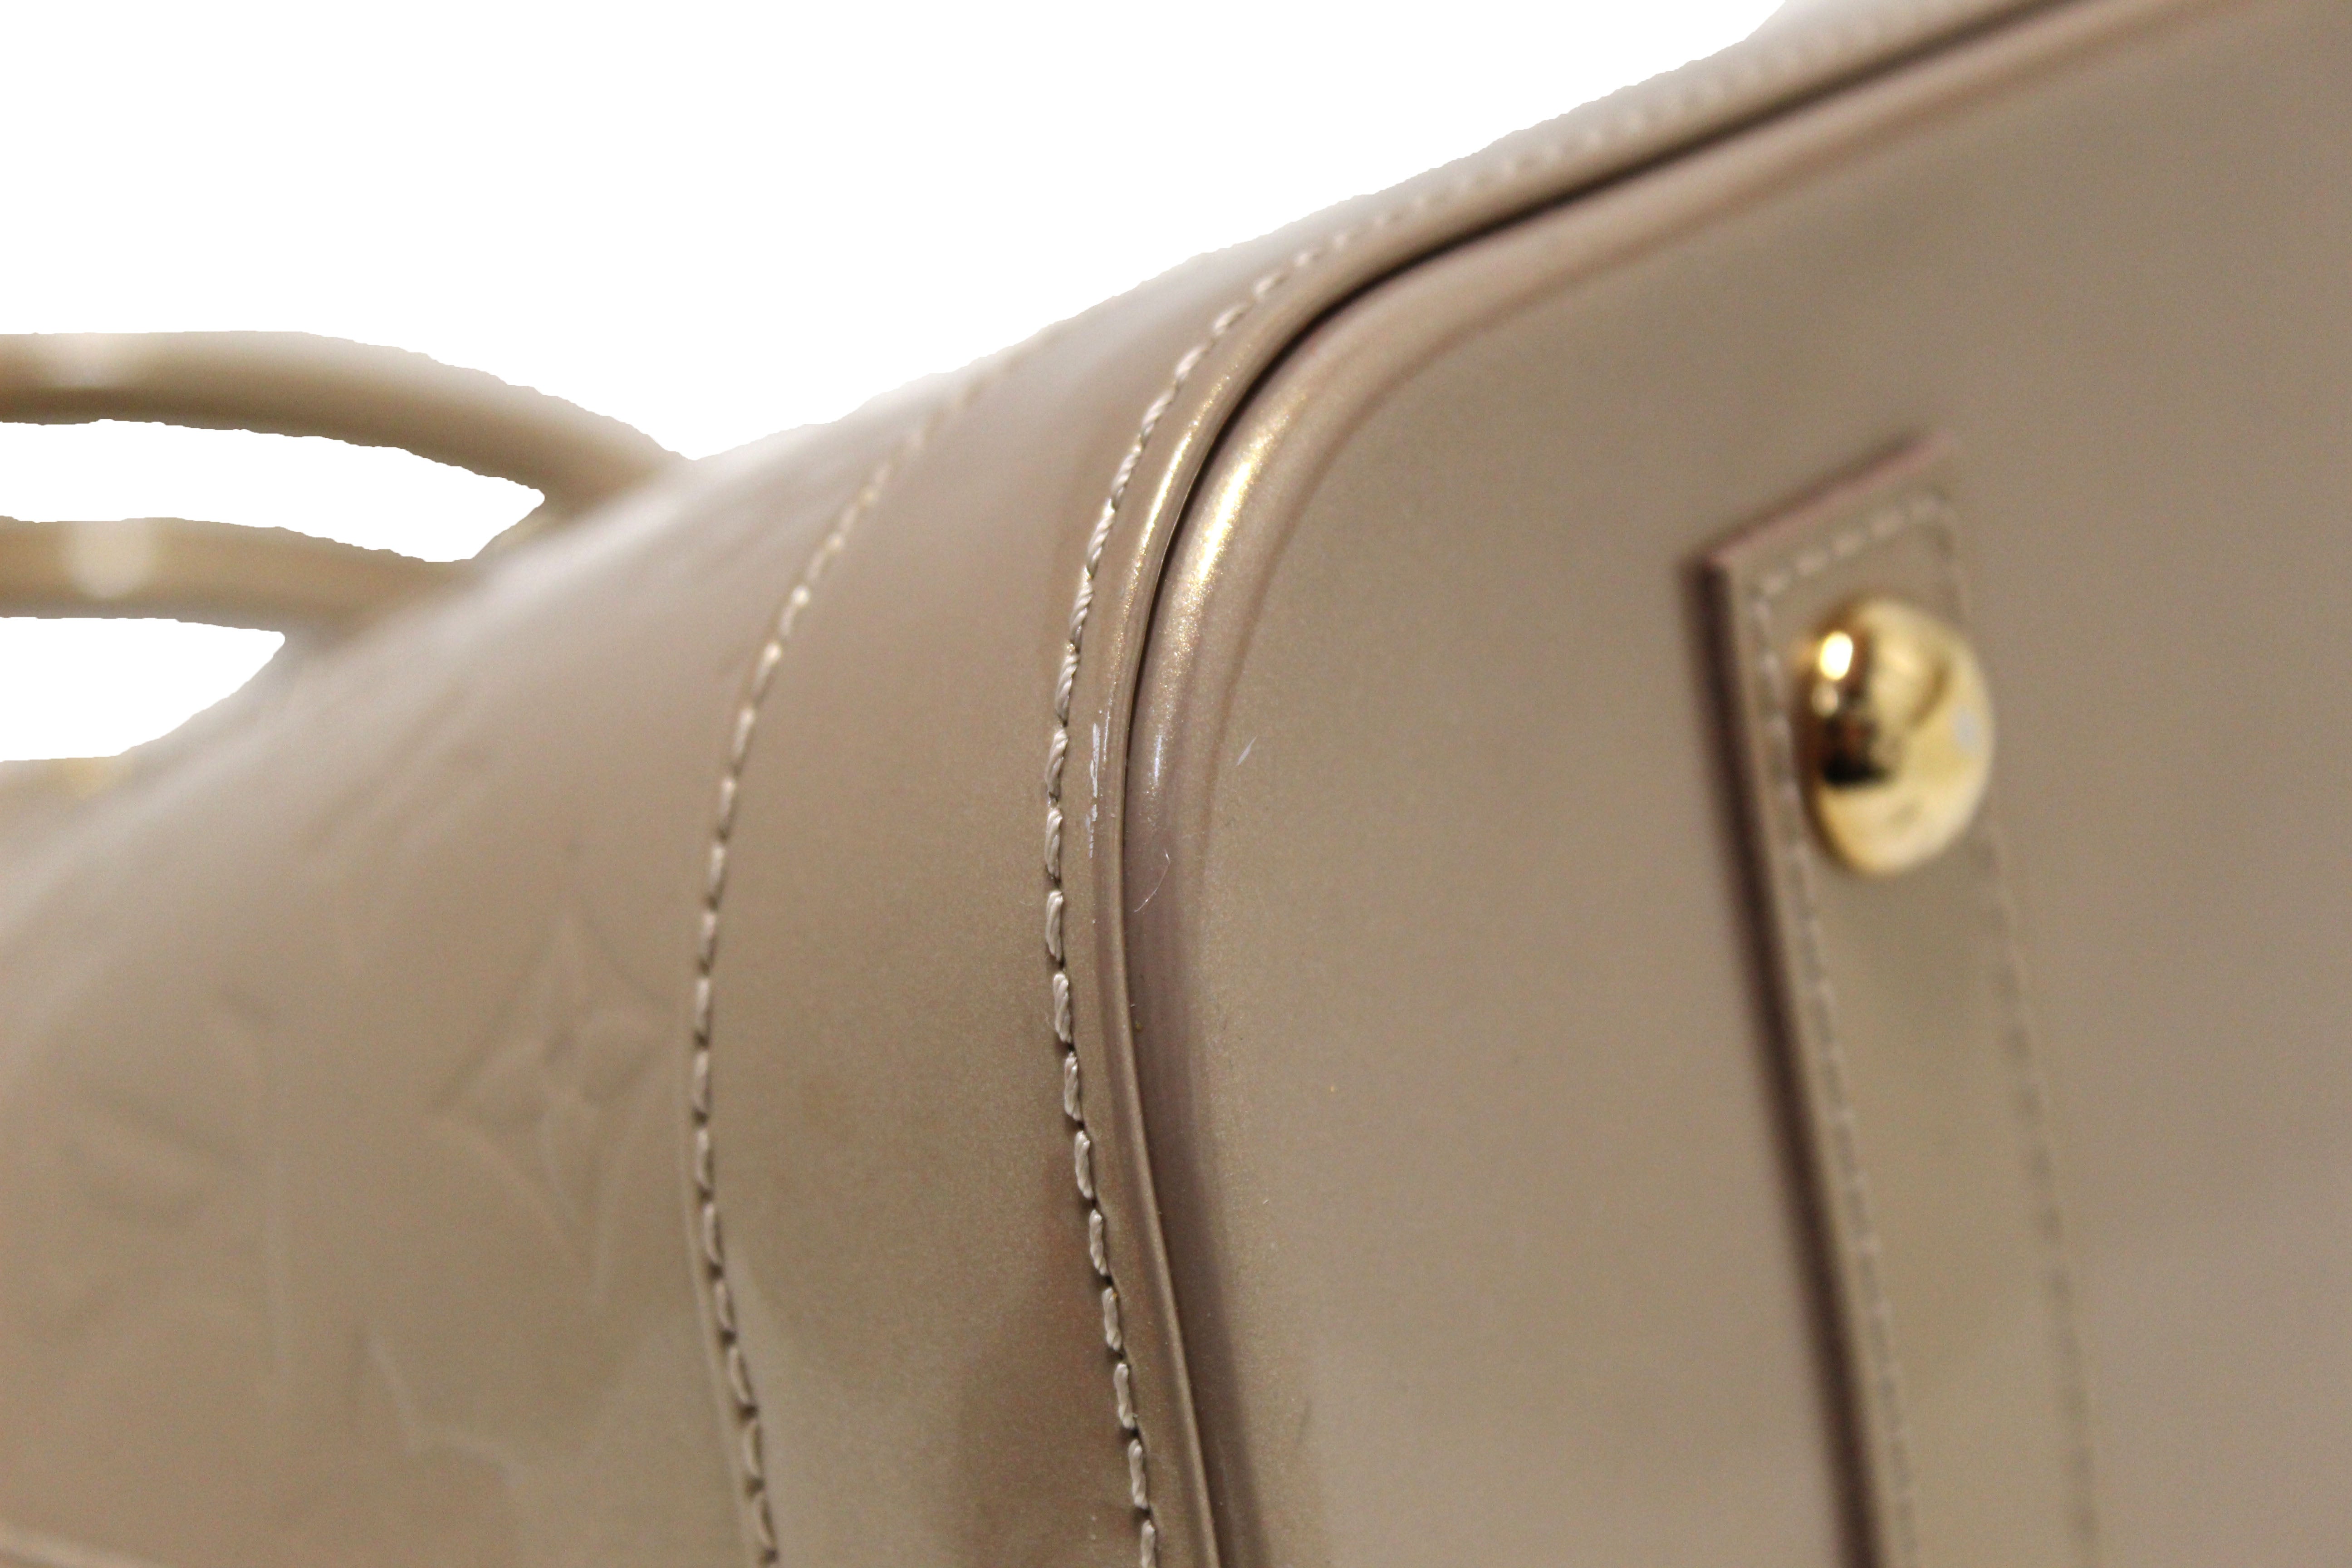 Louis Vuitton Alma PM Handbag